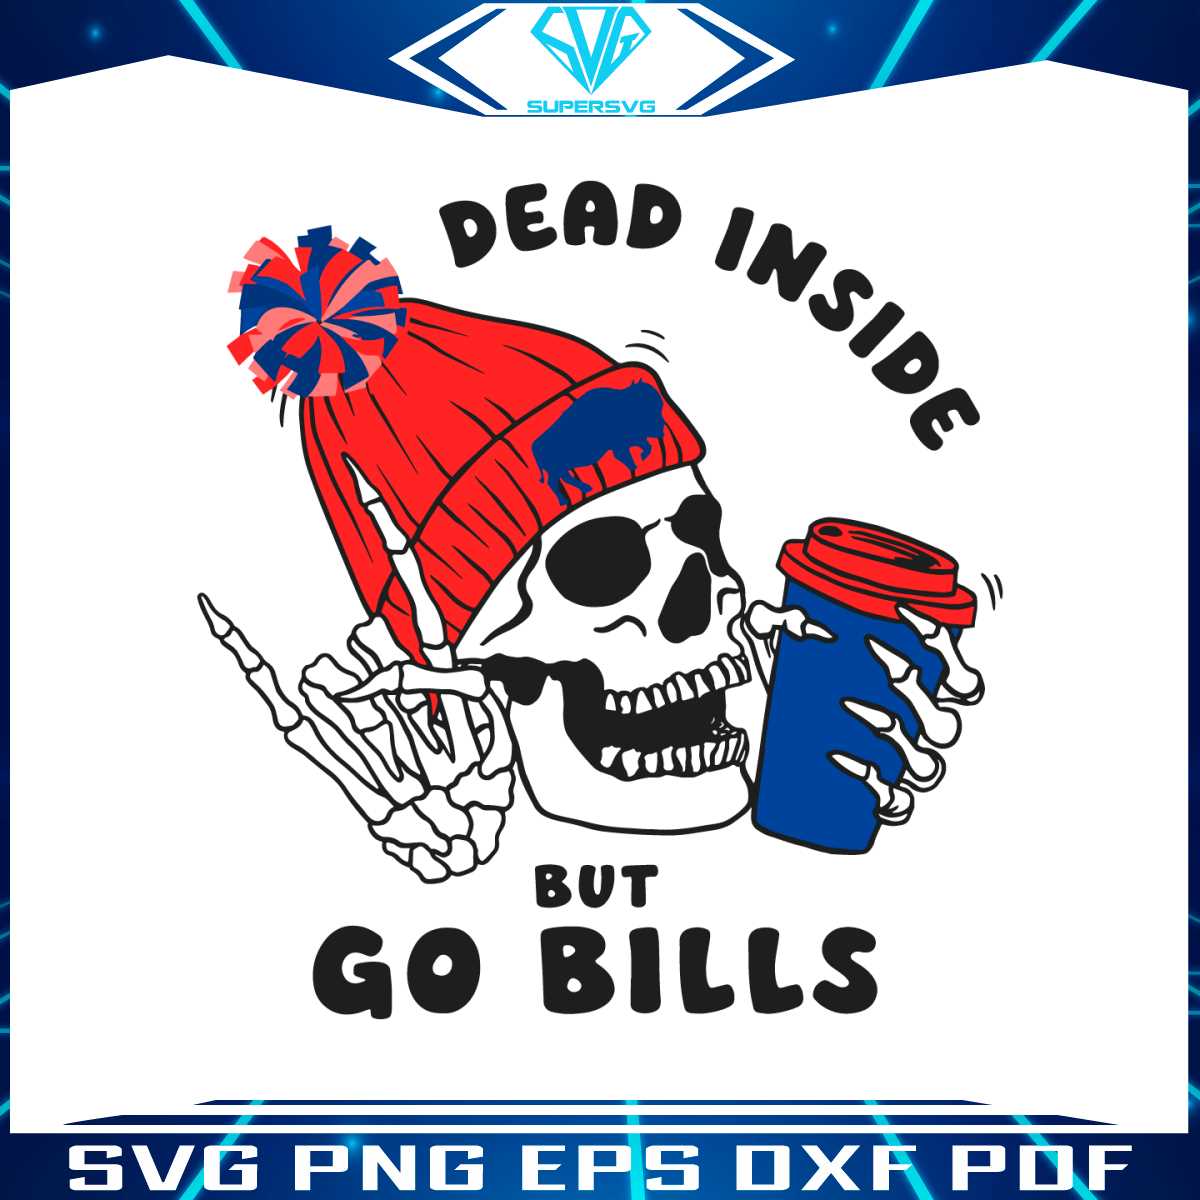 dead-inside-but-go-bills-skeleton-svg